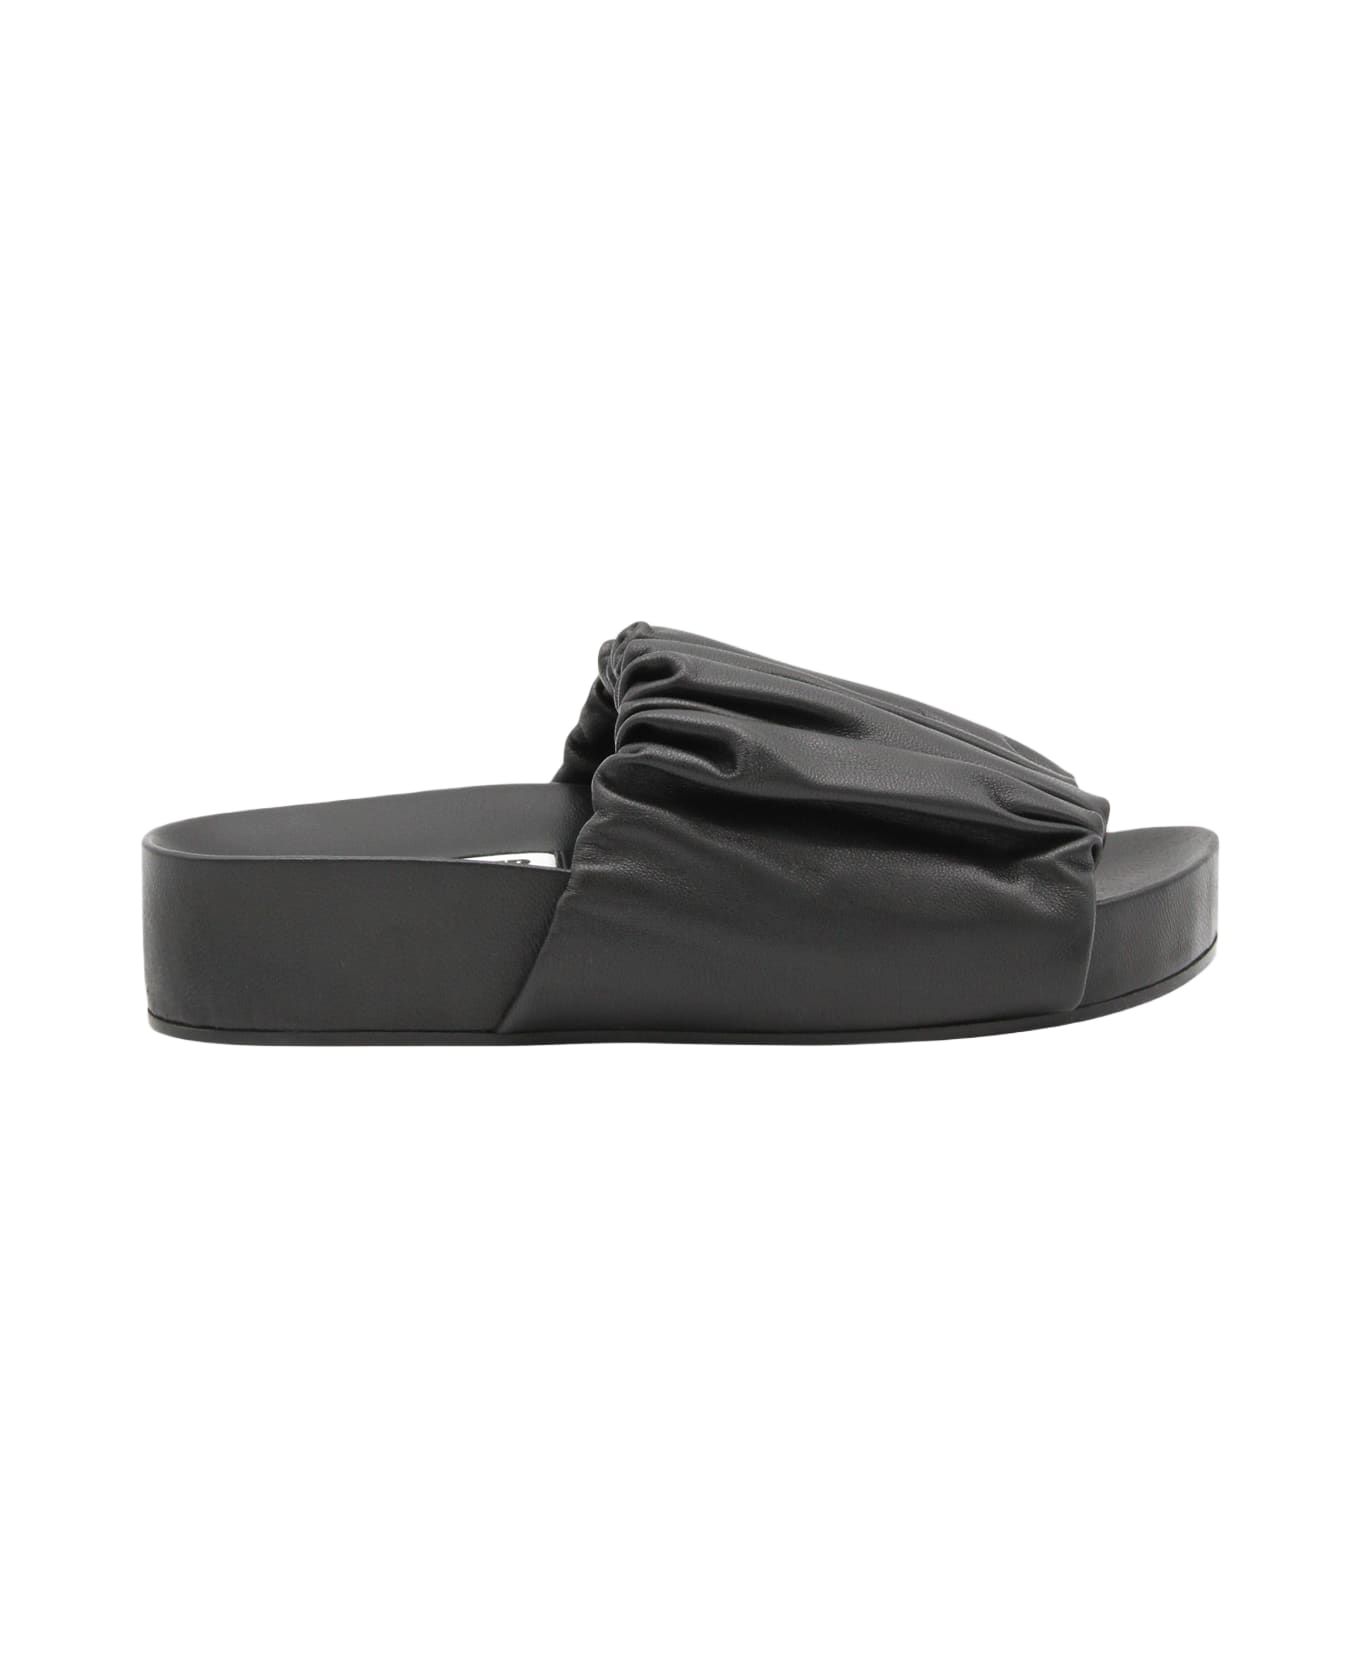 Jil Sander Black Leather Slides - Black